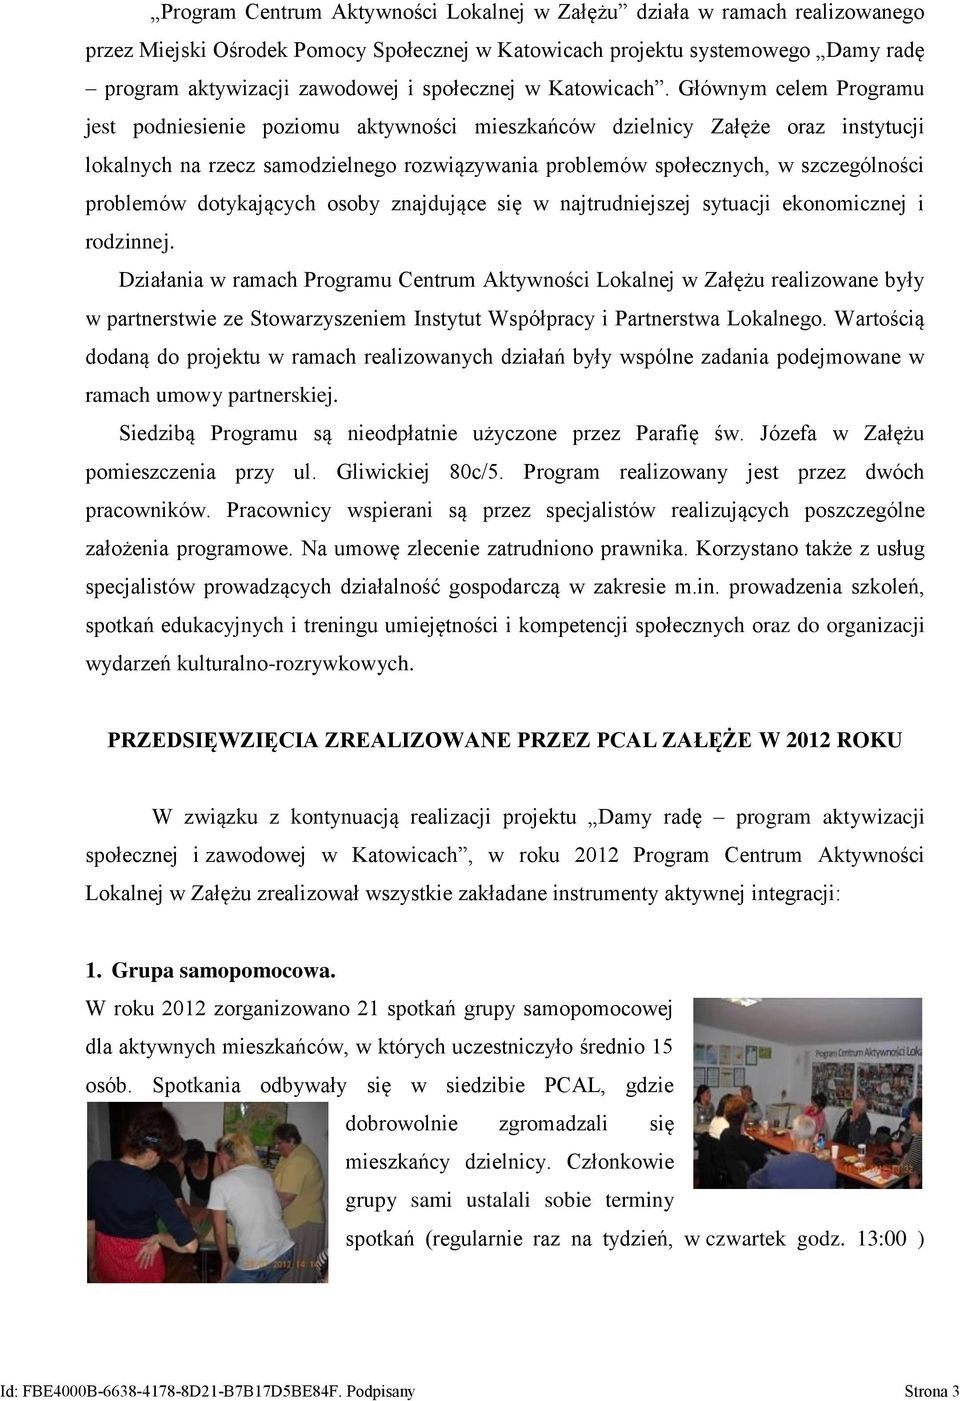 Głównym celem Programu jest podniesienie poziomu aktywności mieszkańców dzielnicy Załęże oraz instytucji lokalnych na rzecz samodzielnego rozwiązywania problemów społecznych, w szczególności